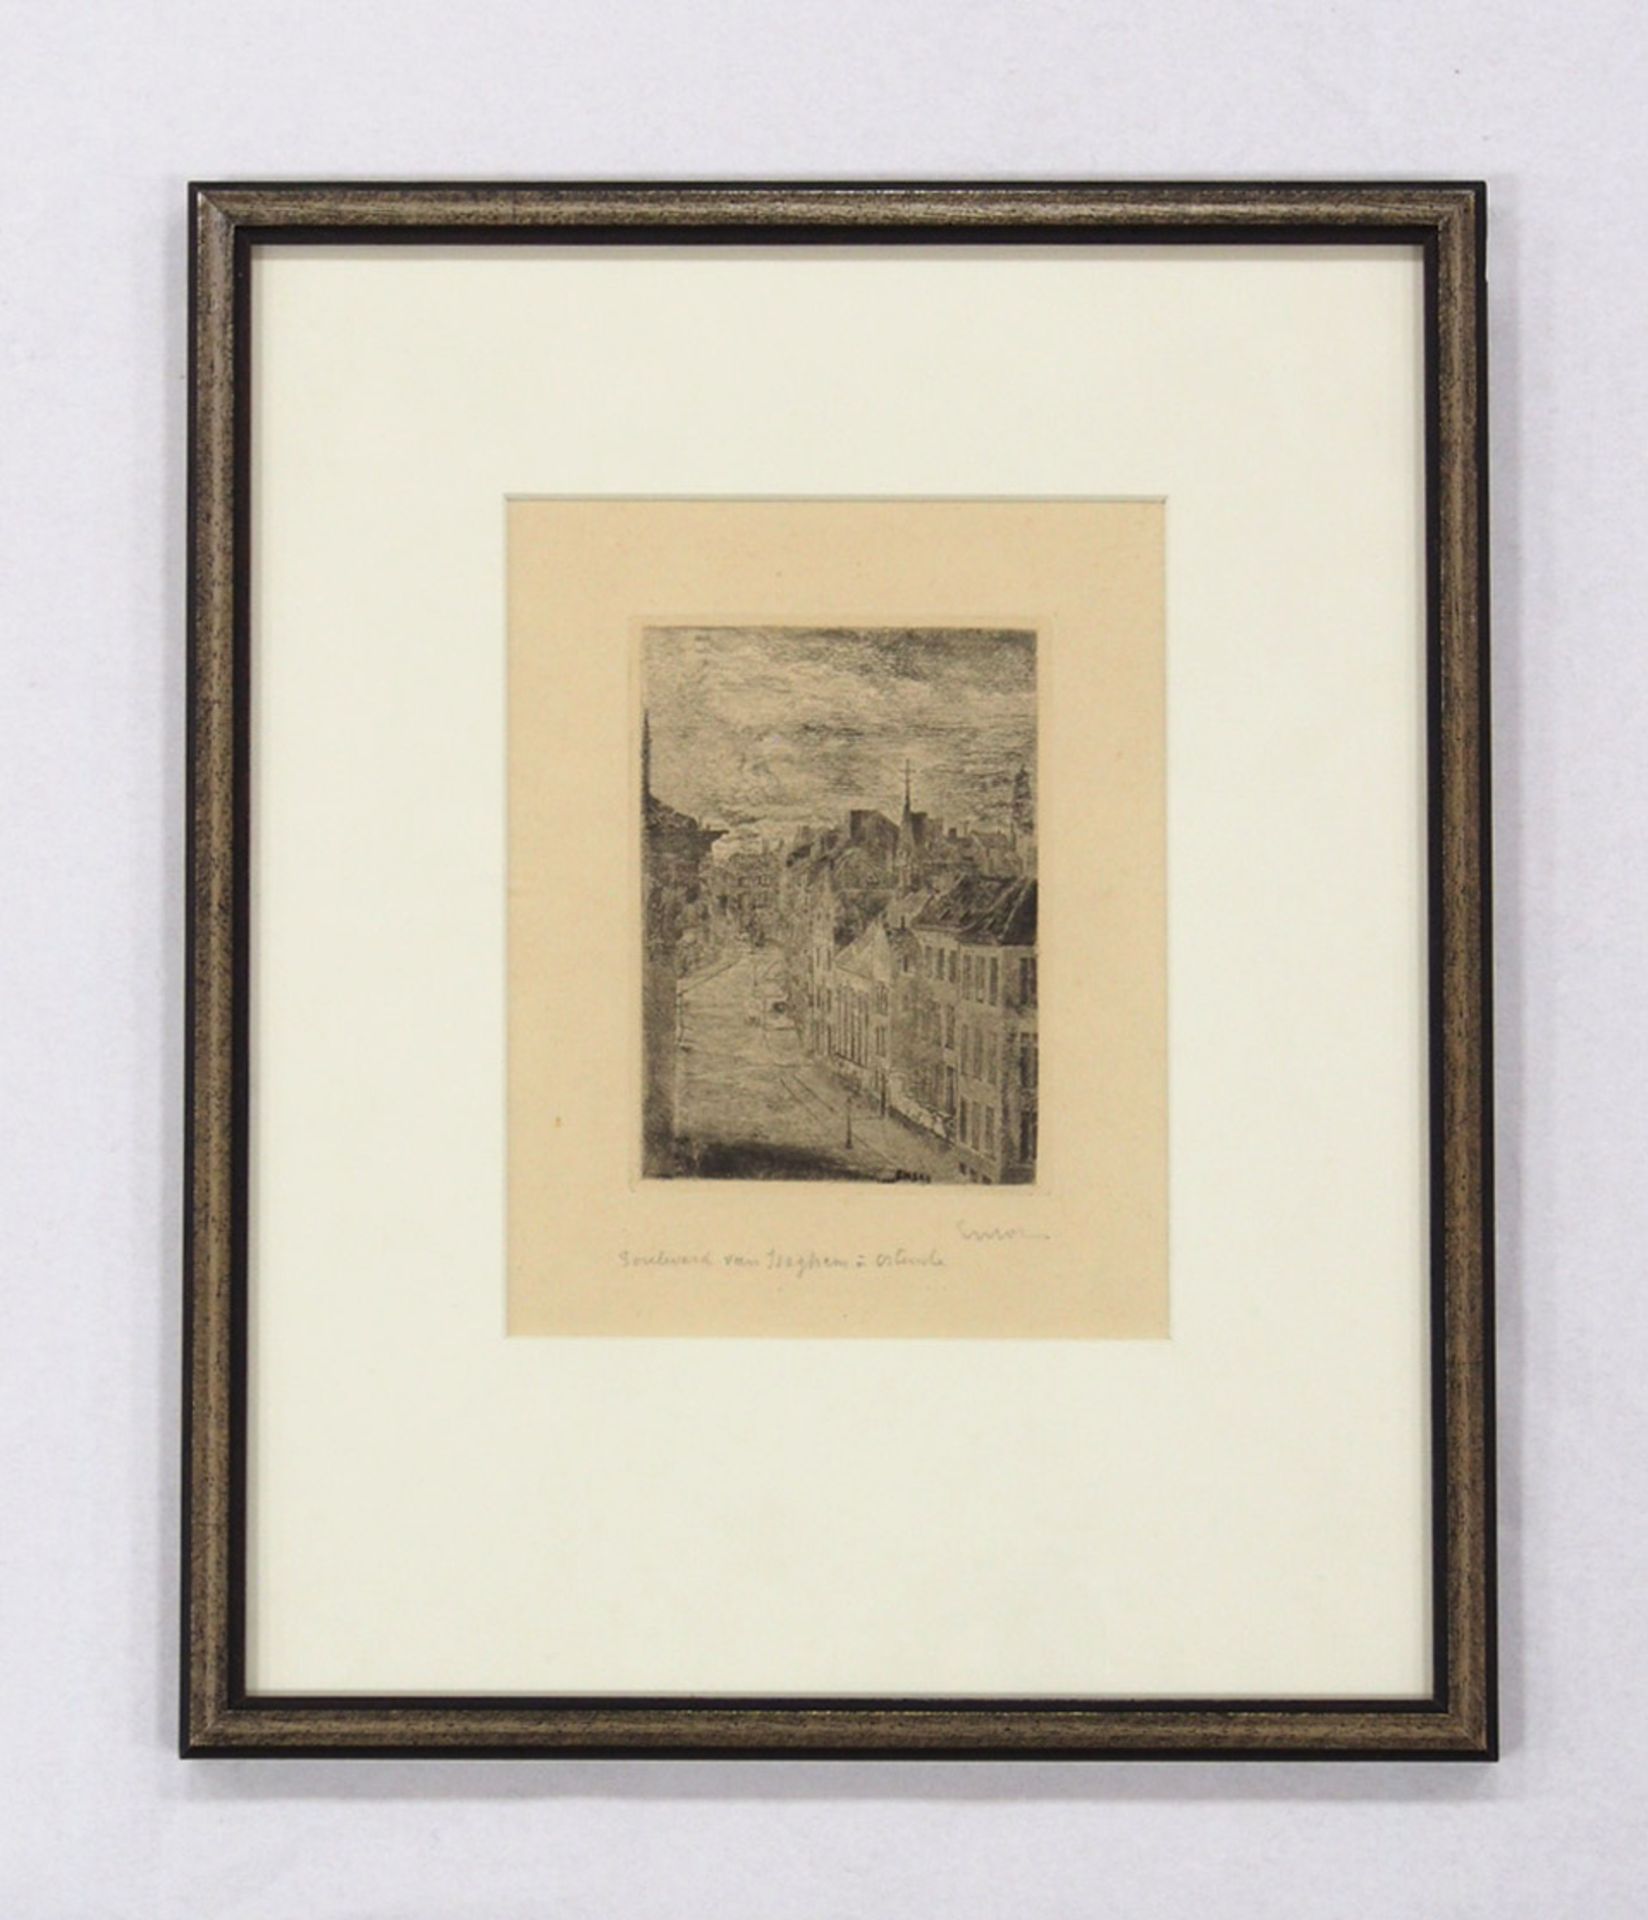 ENSOR, James1860-1949Boulevard von IseghemRadierung, signiert unten rechts, 20 x 15 cm, gerahmt - Bild 2 aus 2